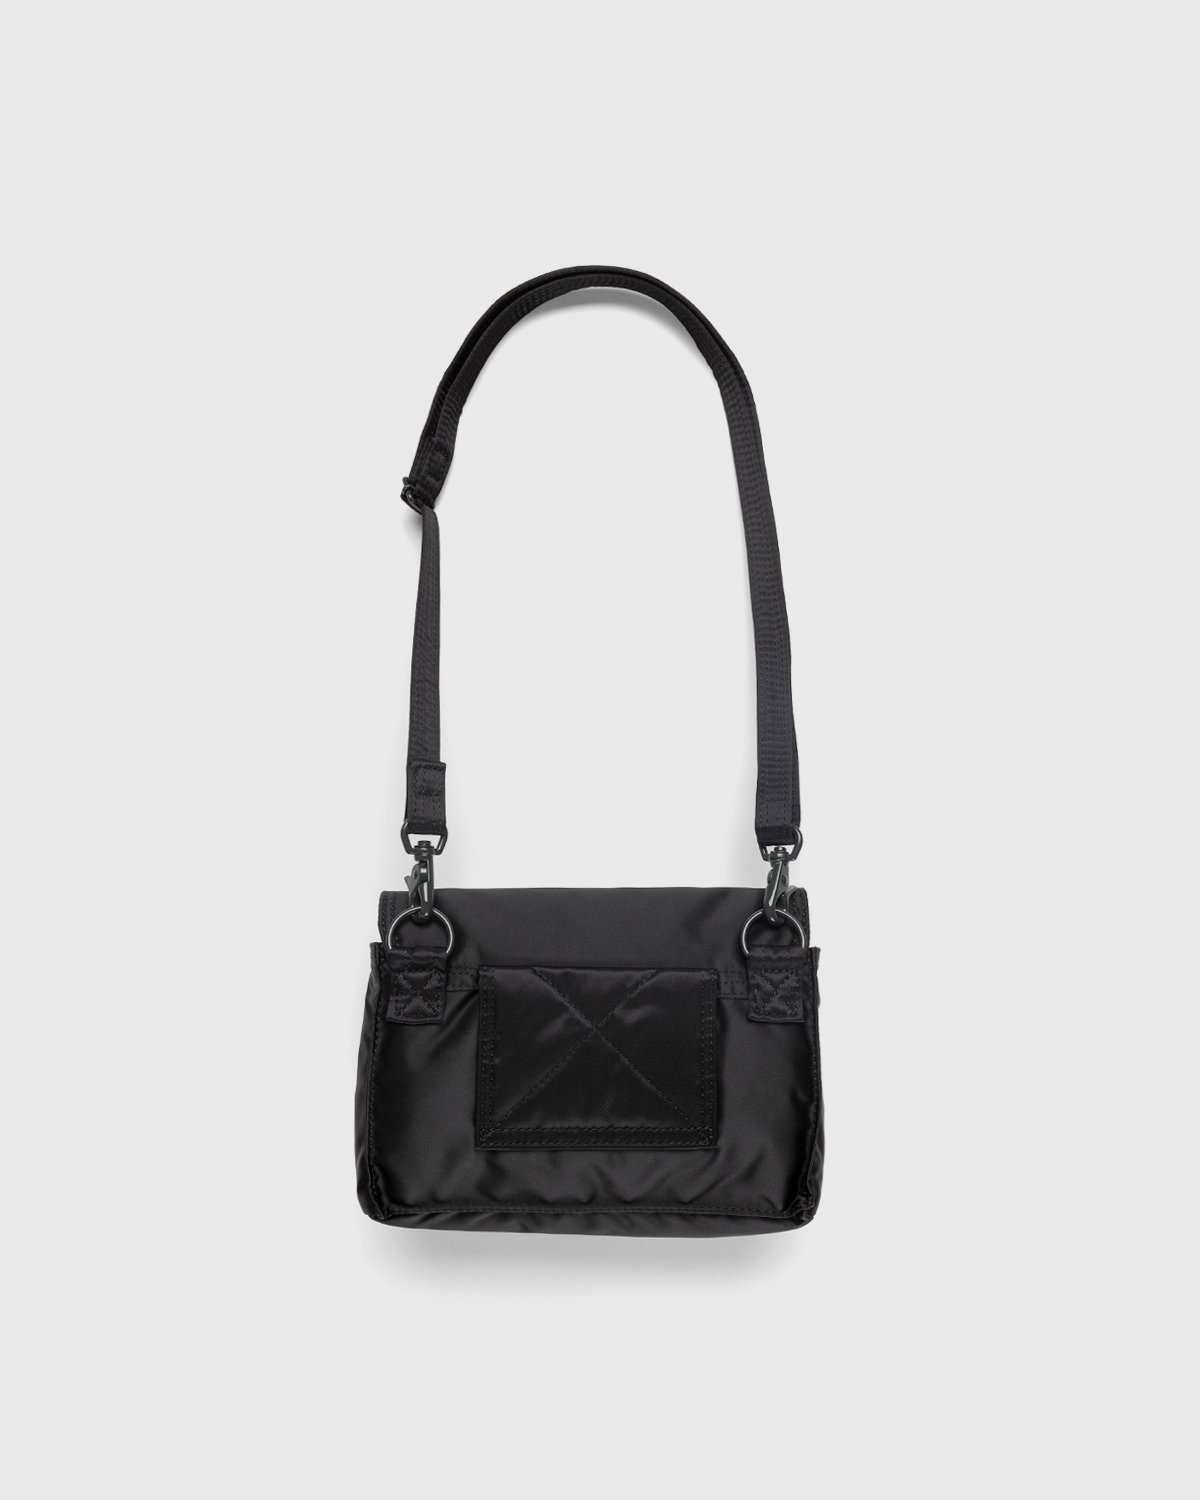 Porter-Yoshida & Co. - Tanker Clip Shoulder Bag Black - Accessories - Black - Image 2